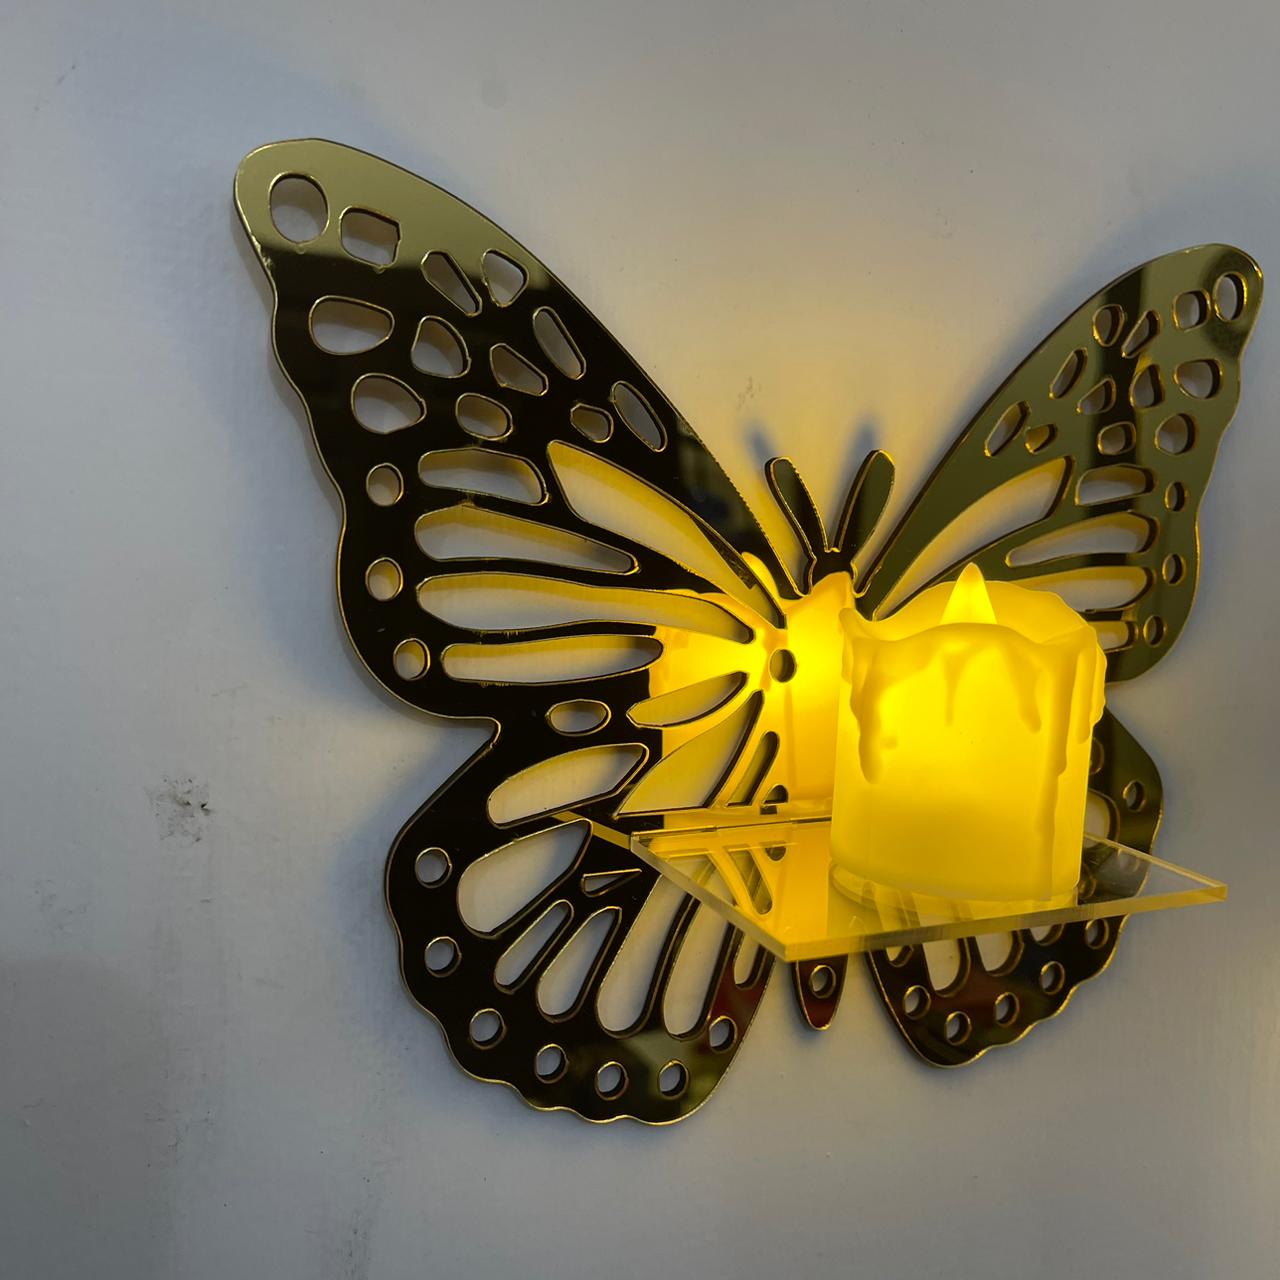 Golden Acrylic DIY Mini Shelves Wall Decor